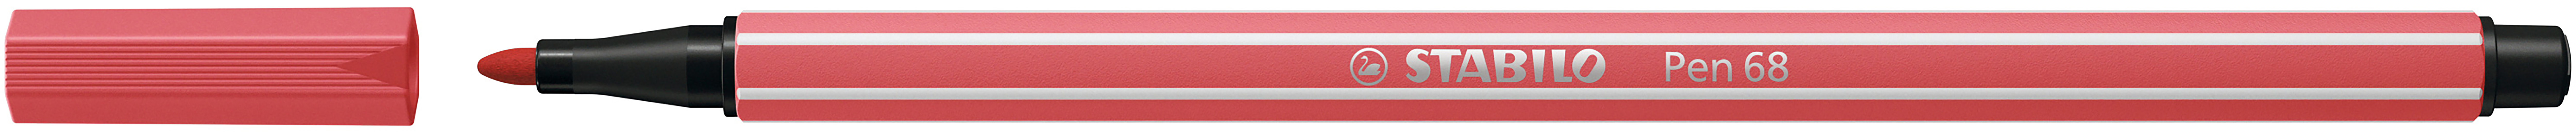 STABILO Stylo Fibre Pen 68 1.0mm 68/47 rusty red rusty red